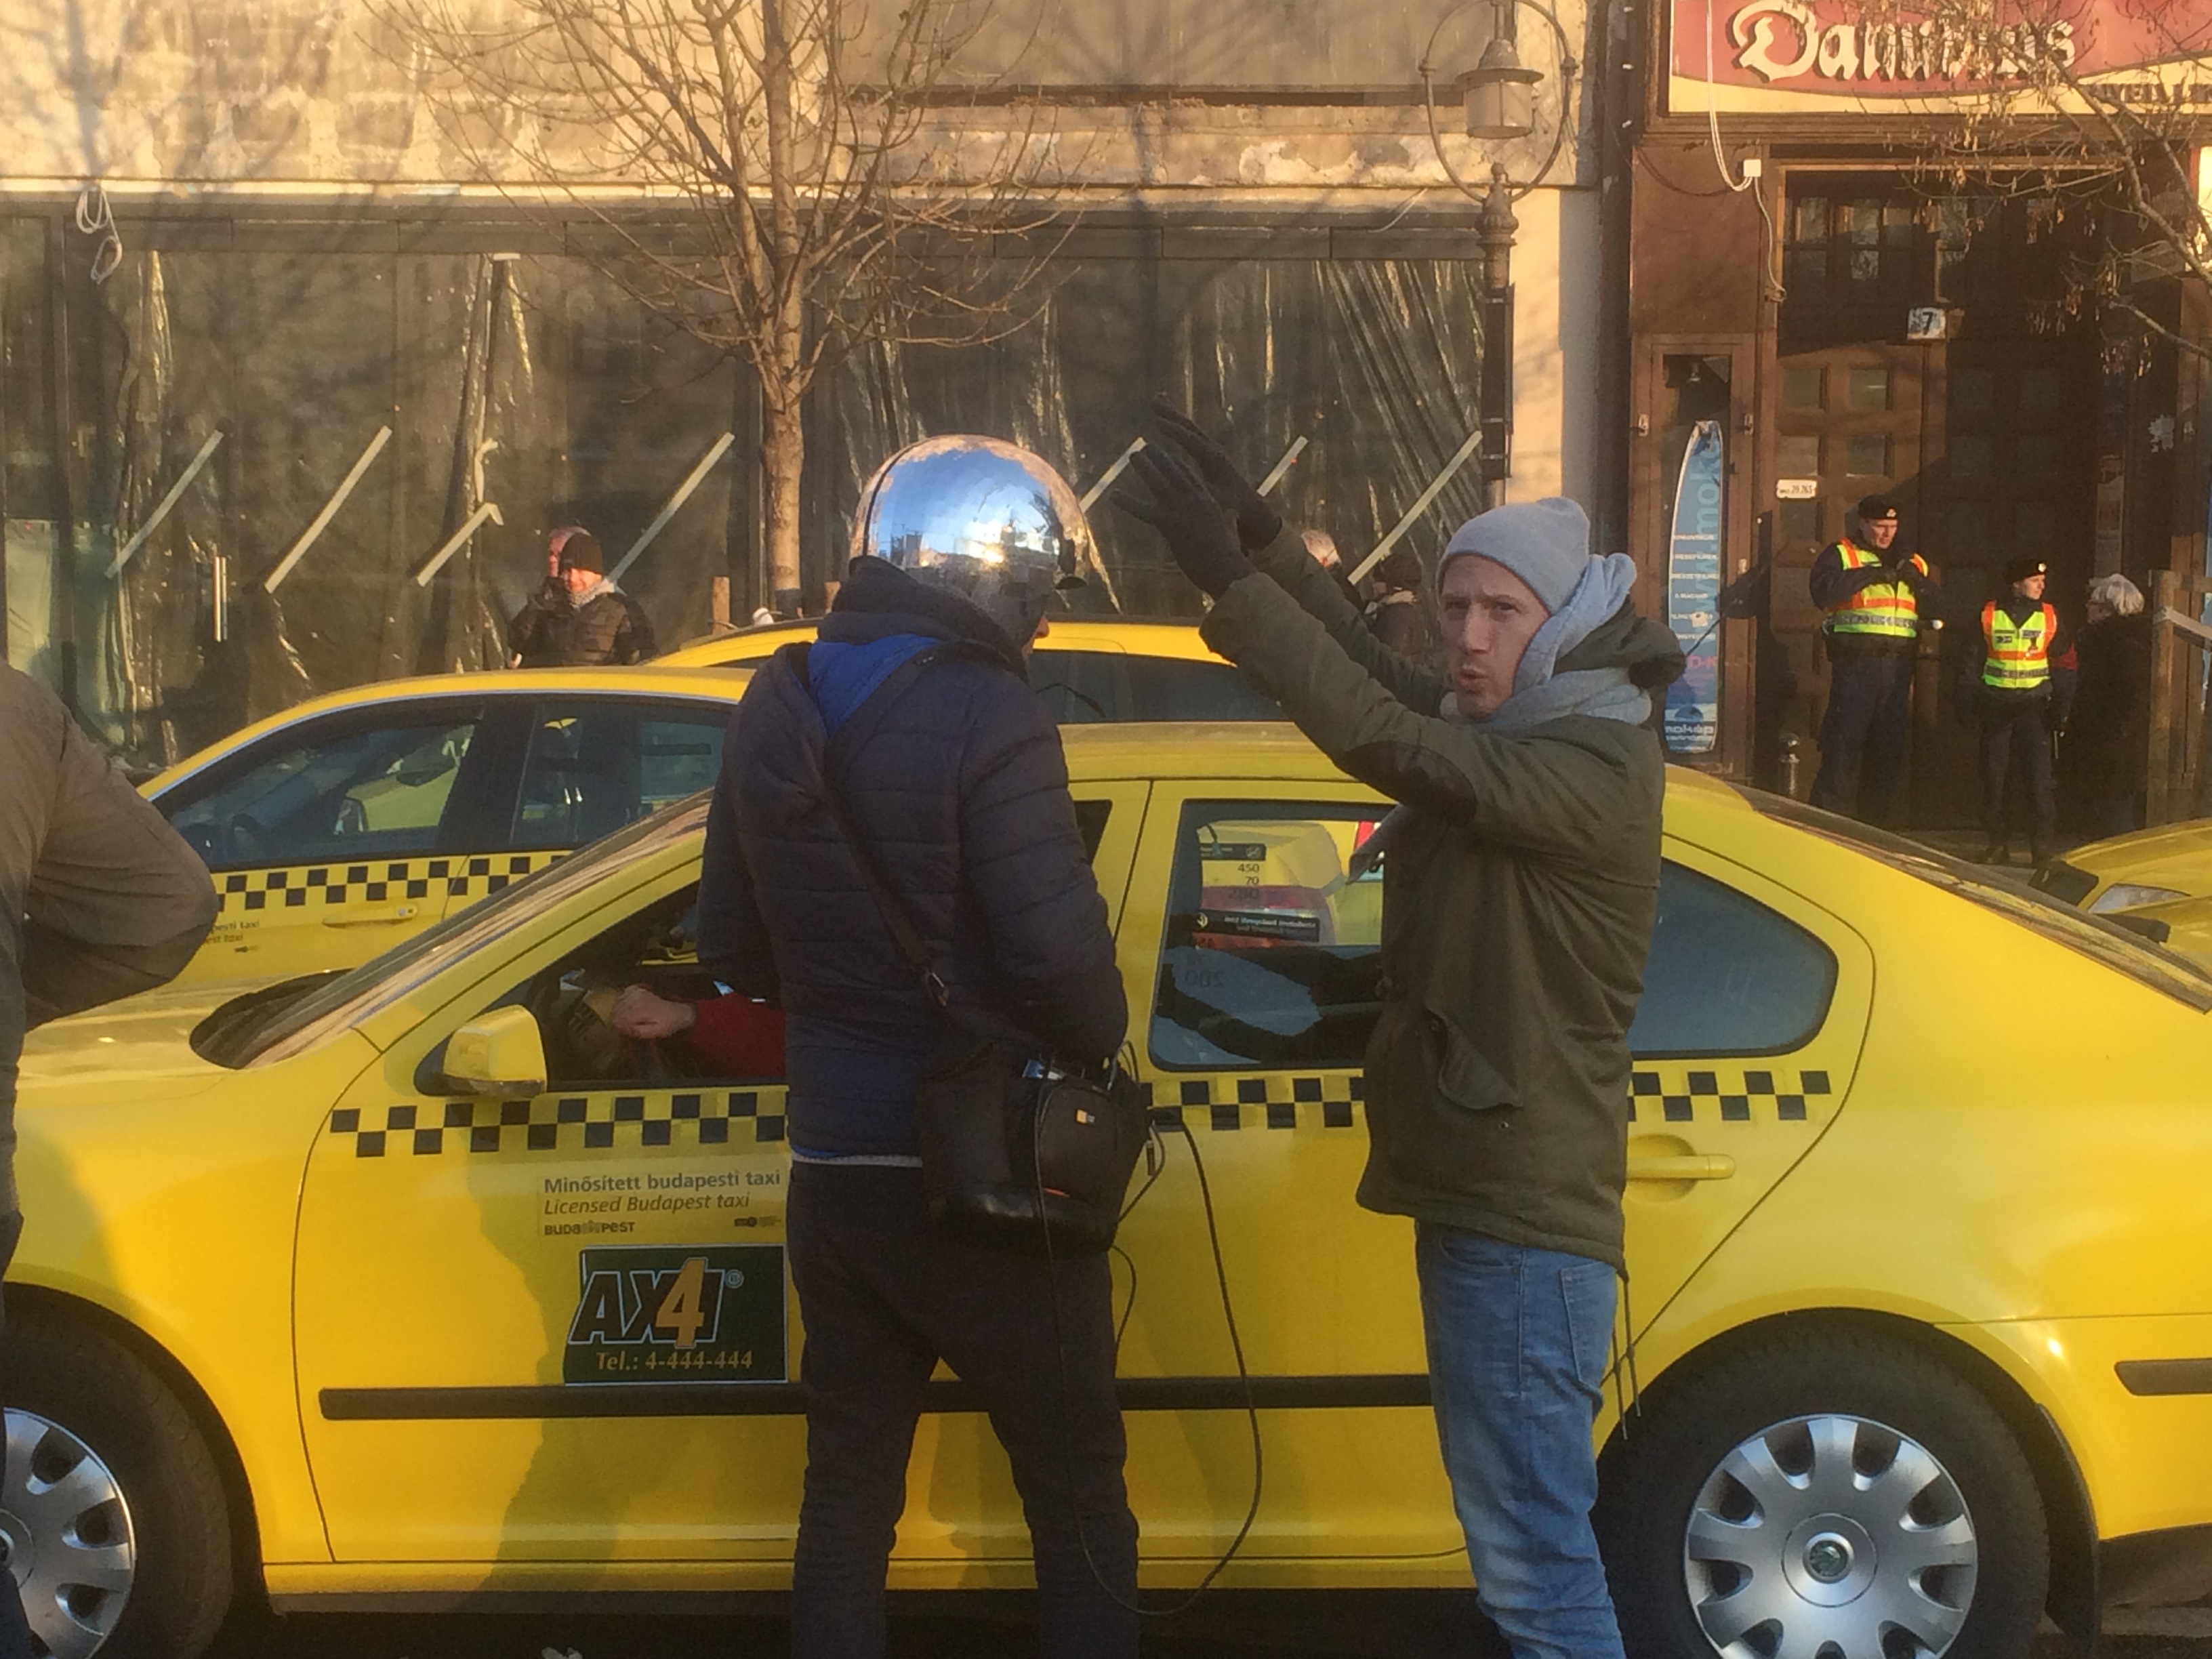 Fantasztikus figurák az Erzsébet teret elfoglaló taxisok